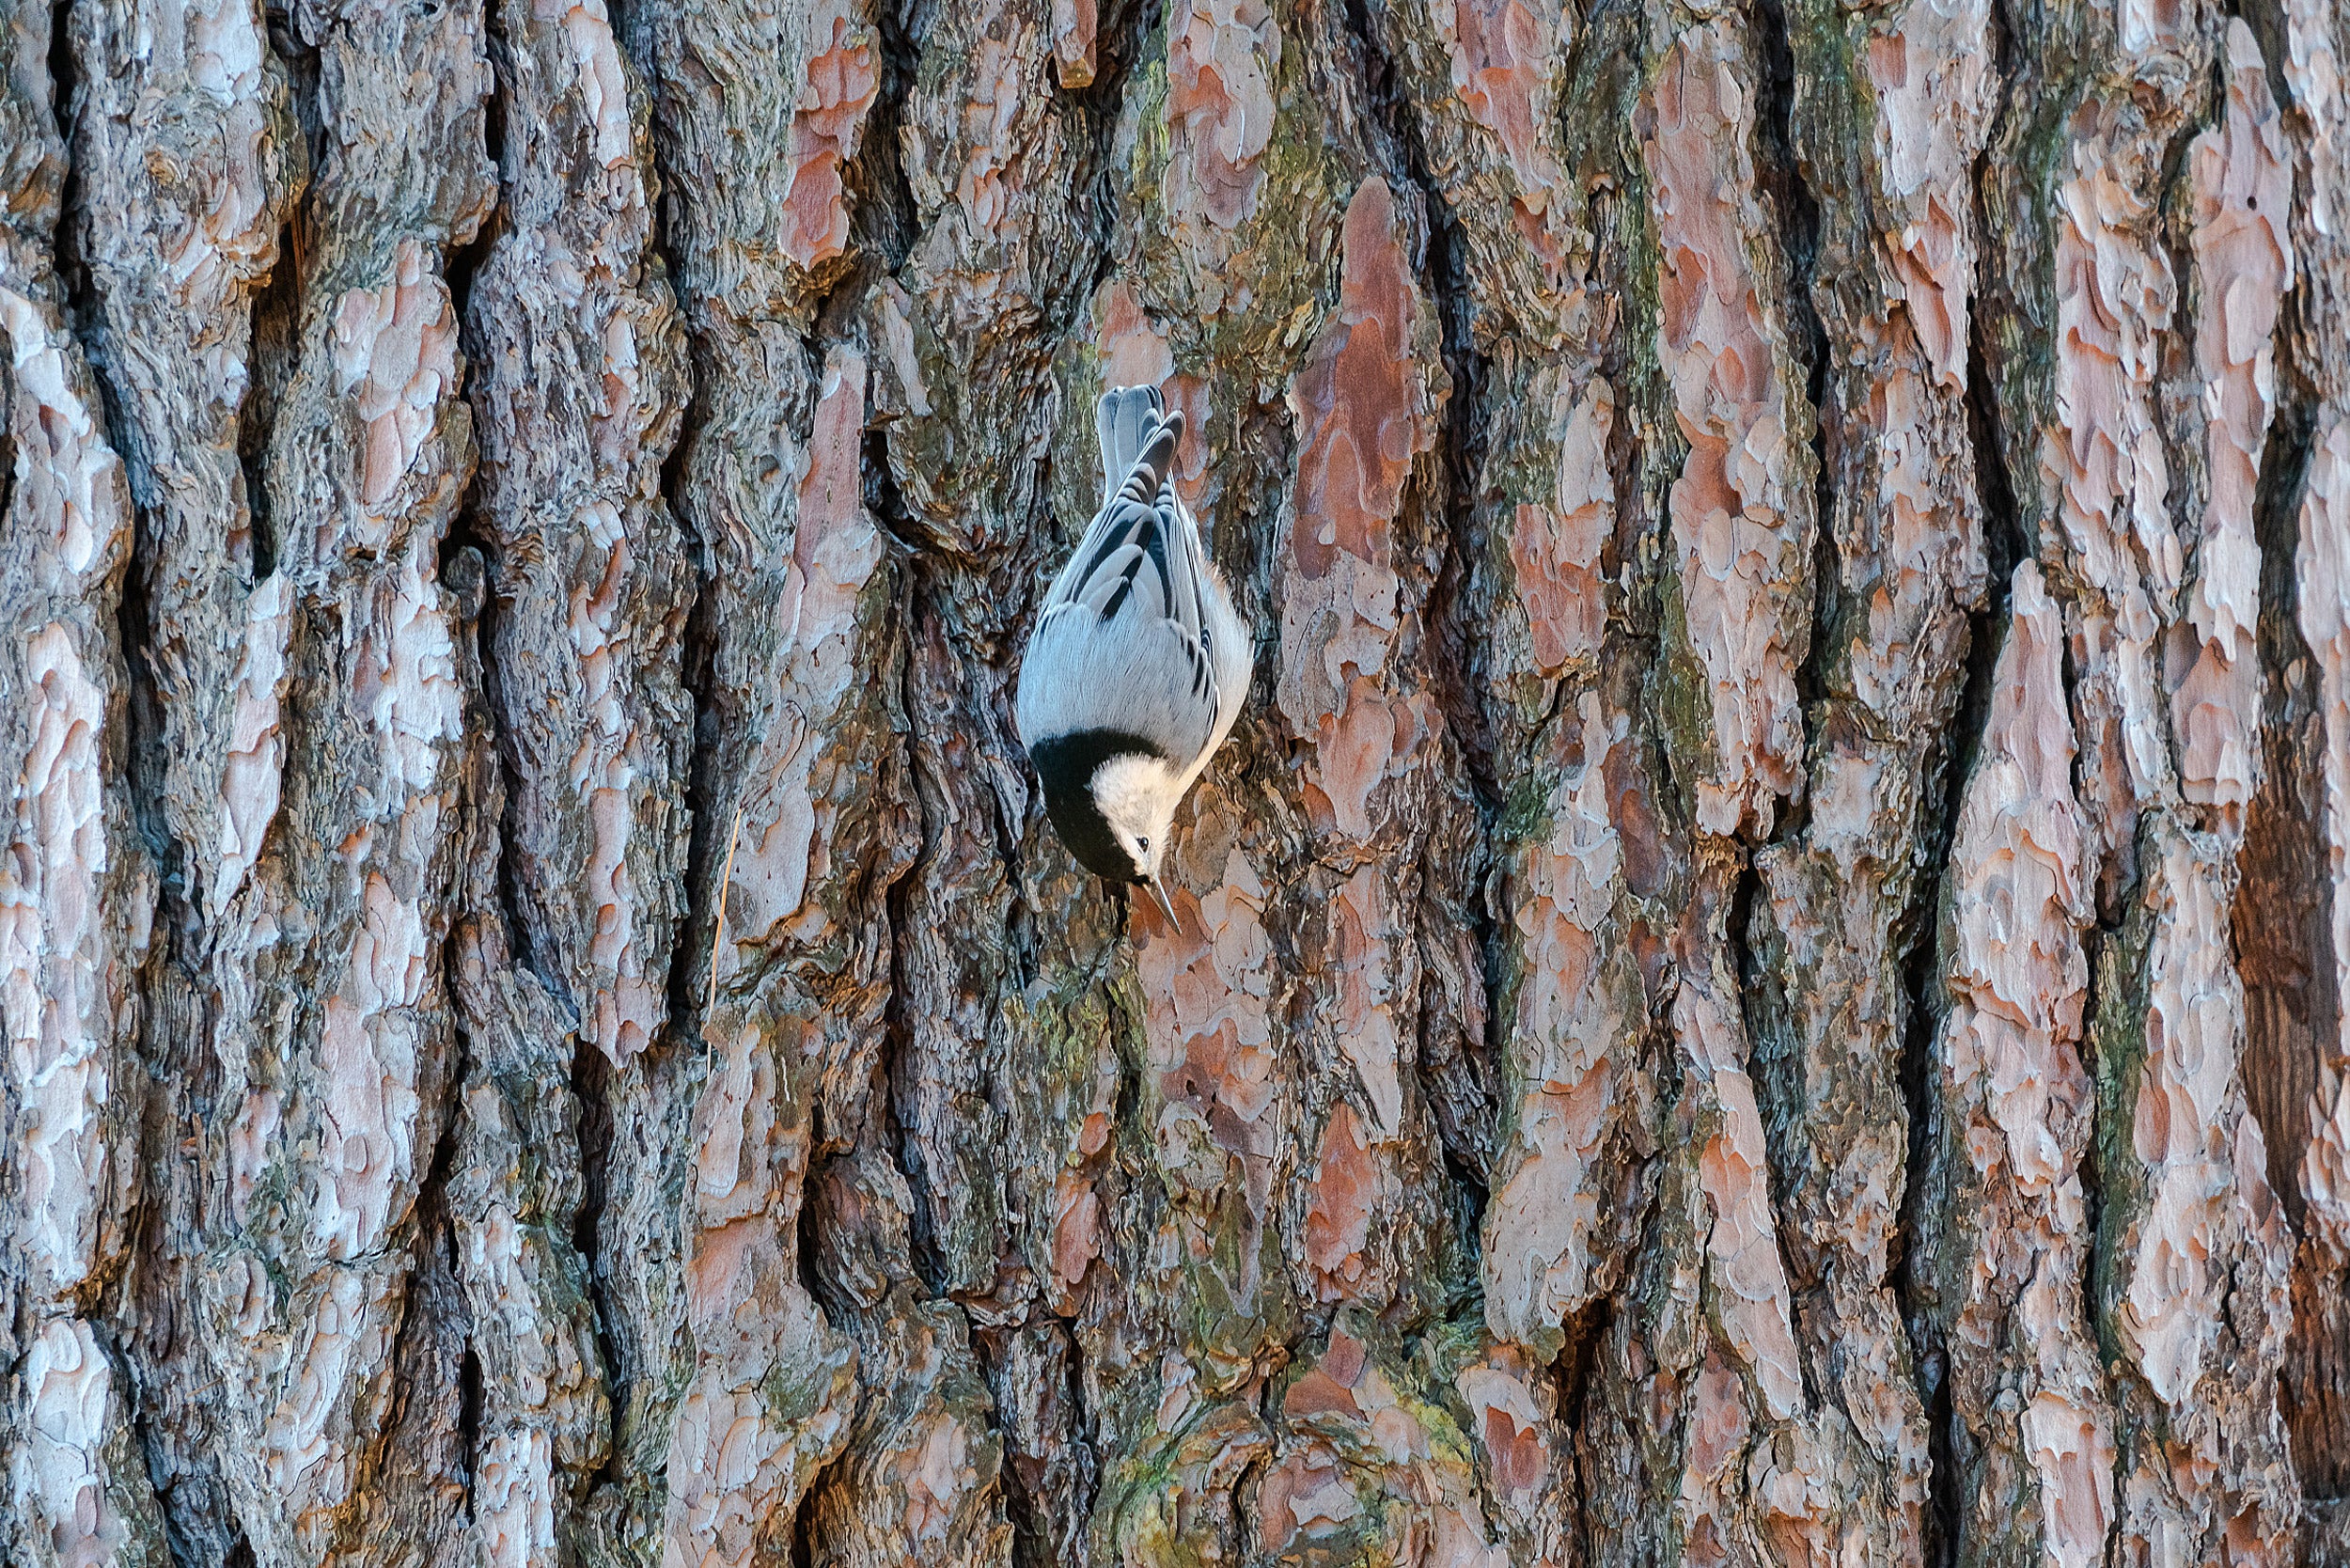 Bird on tree bark.